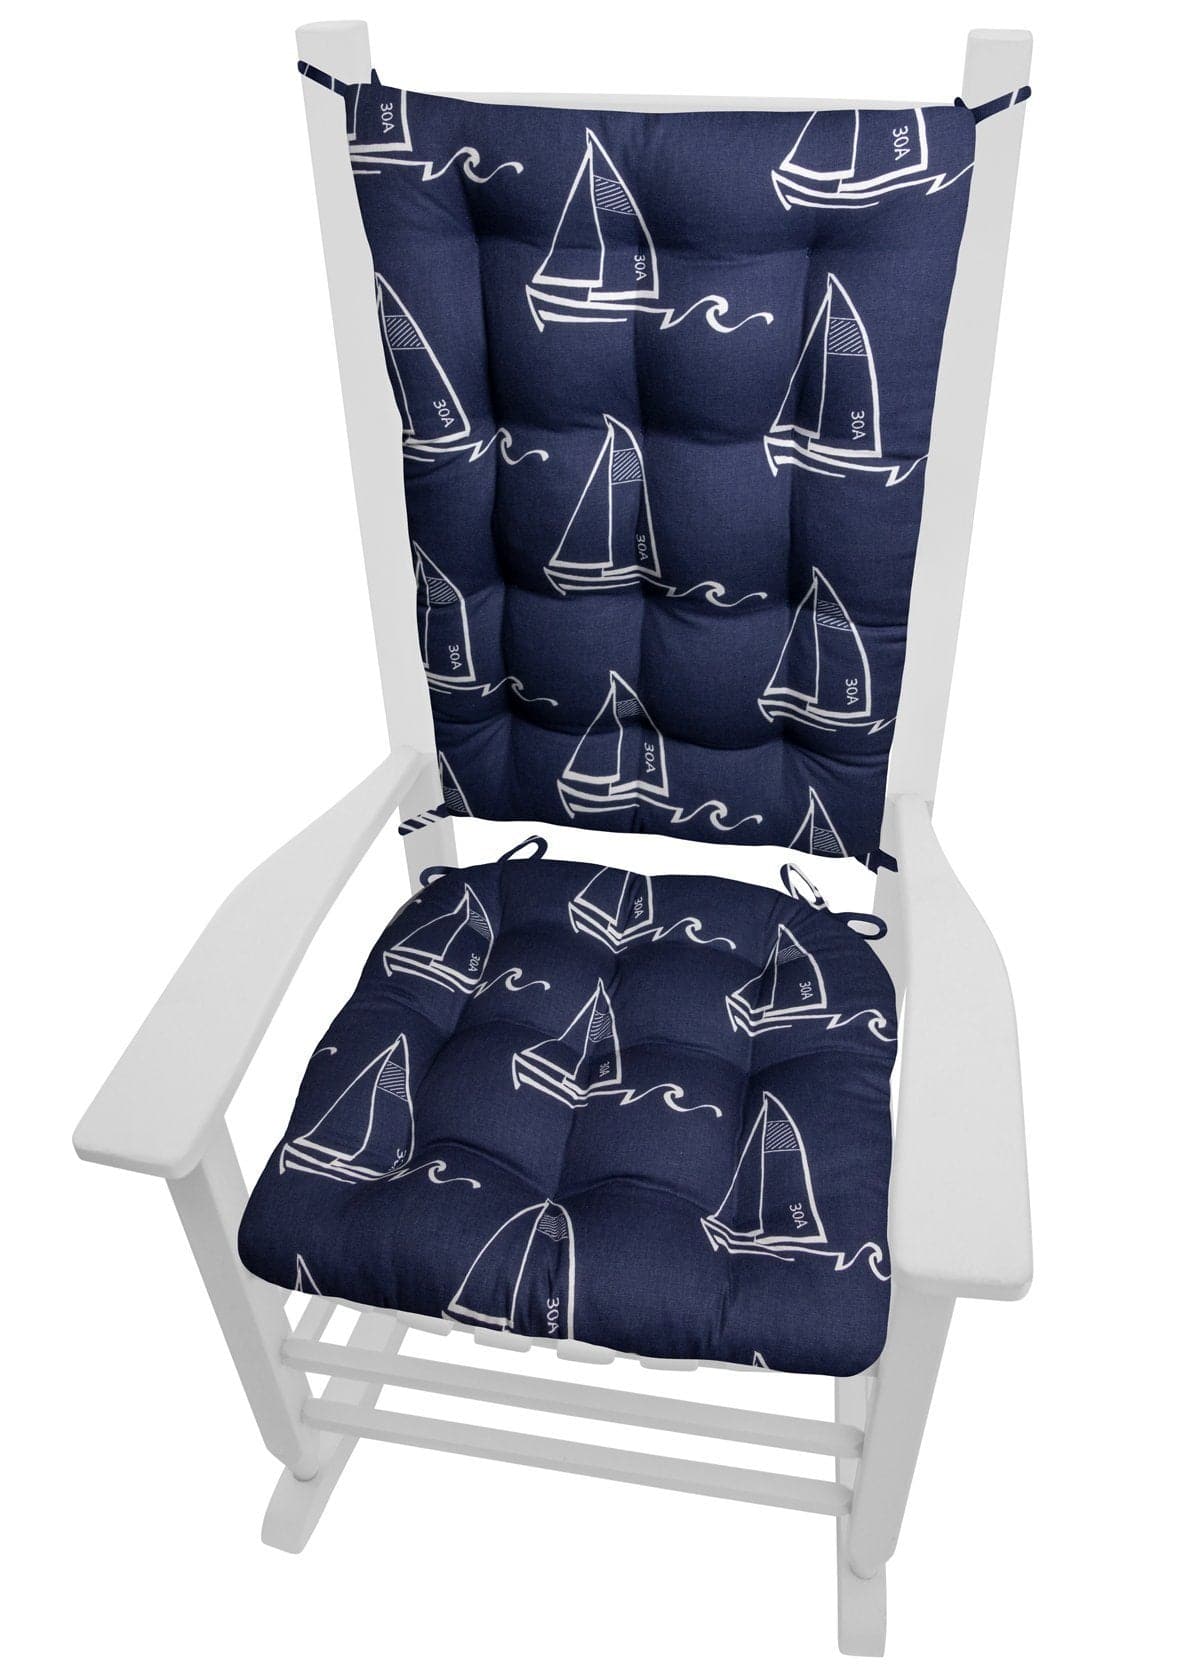 Seaton Sailboats Rocking Chair Cushions - Barnett Home Decor - Navy Blue & White